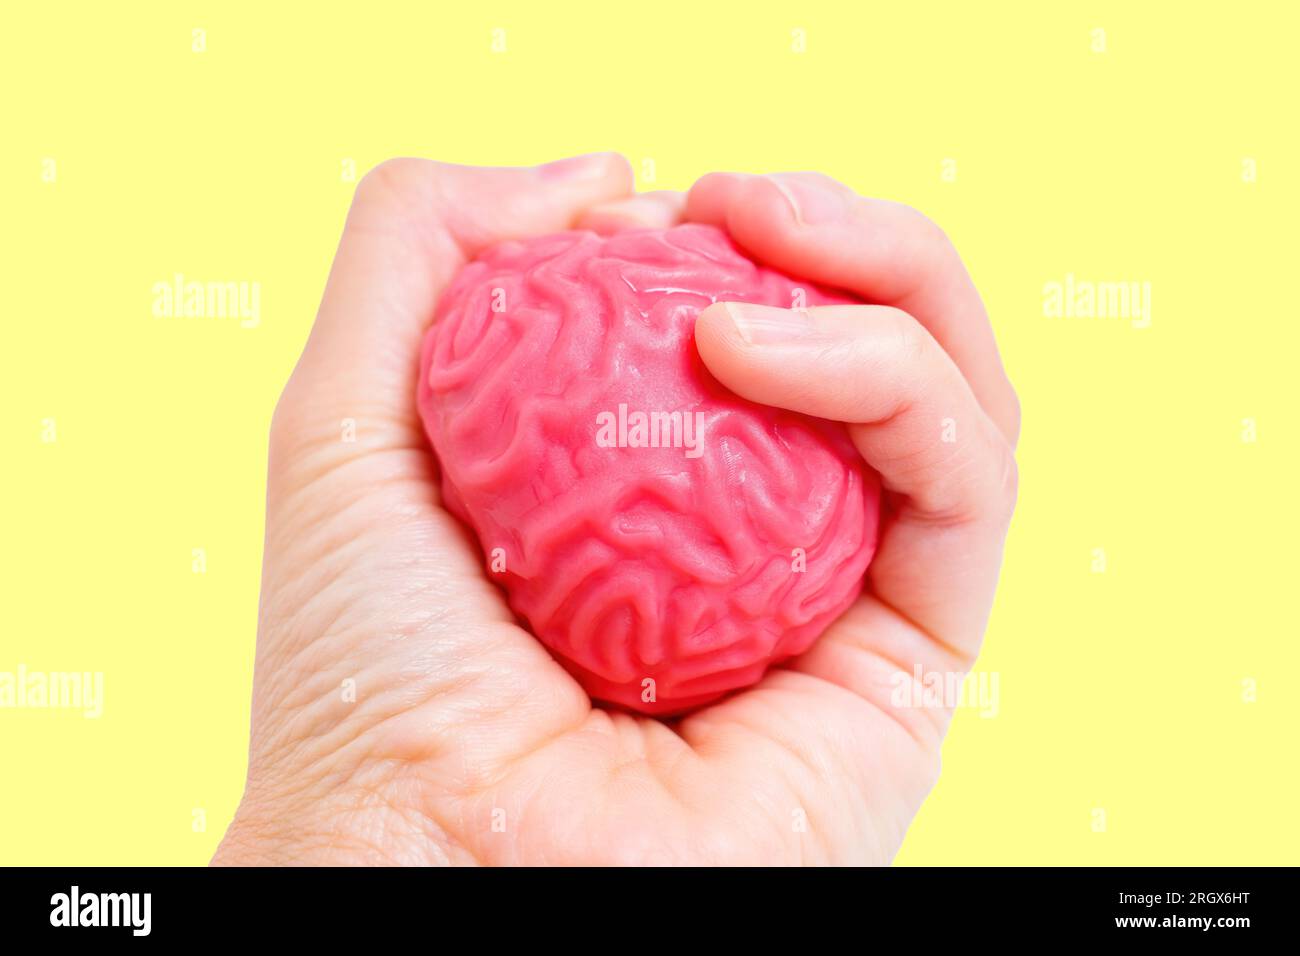 Hand demonstriert Kontrolle und Einfluss, indem sie ein geschmeidiges, gelbähnliches menschliches Hirnmodell fest zusammendrückt, isoliert auf gelbem Hintergrund. Kognitives ab Formen Stockfoto